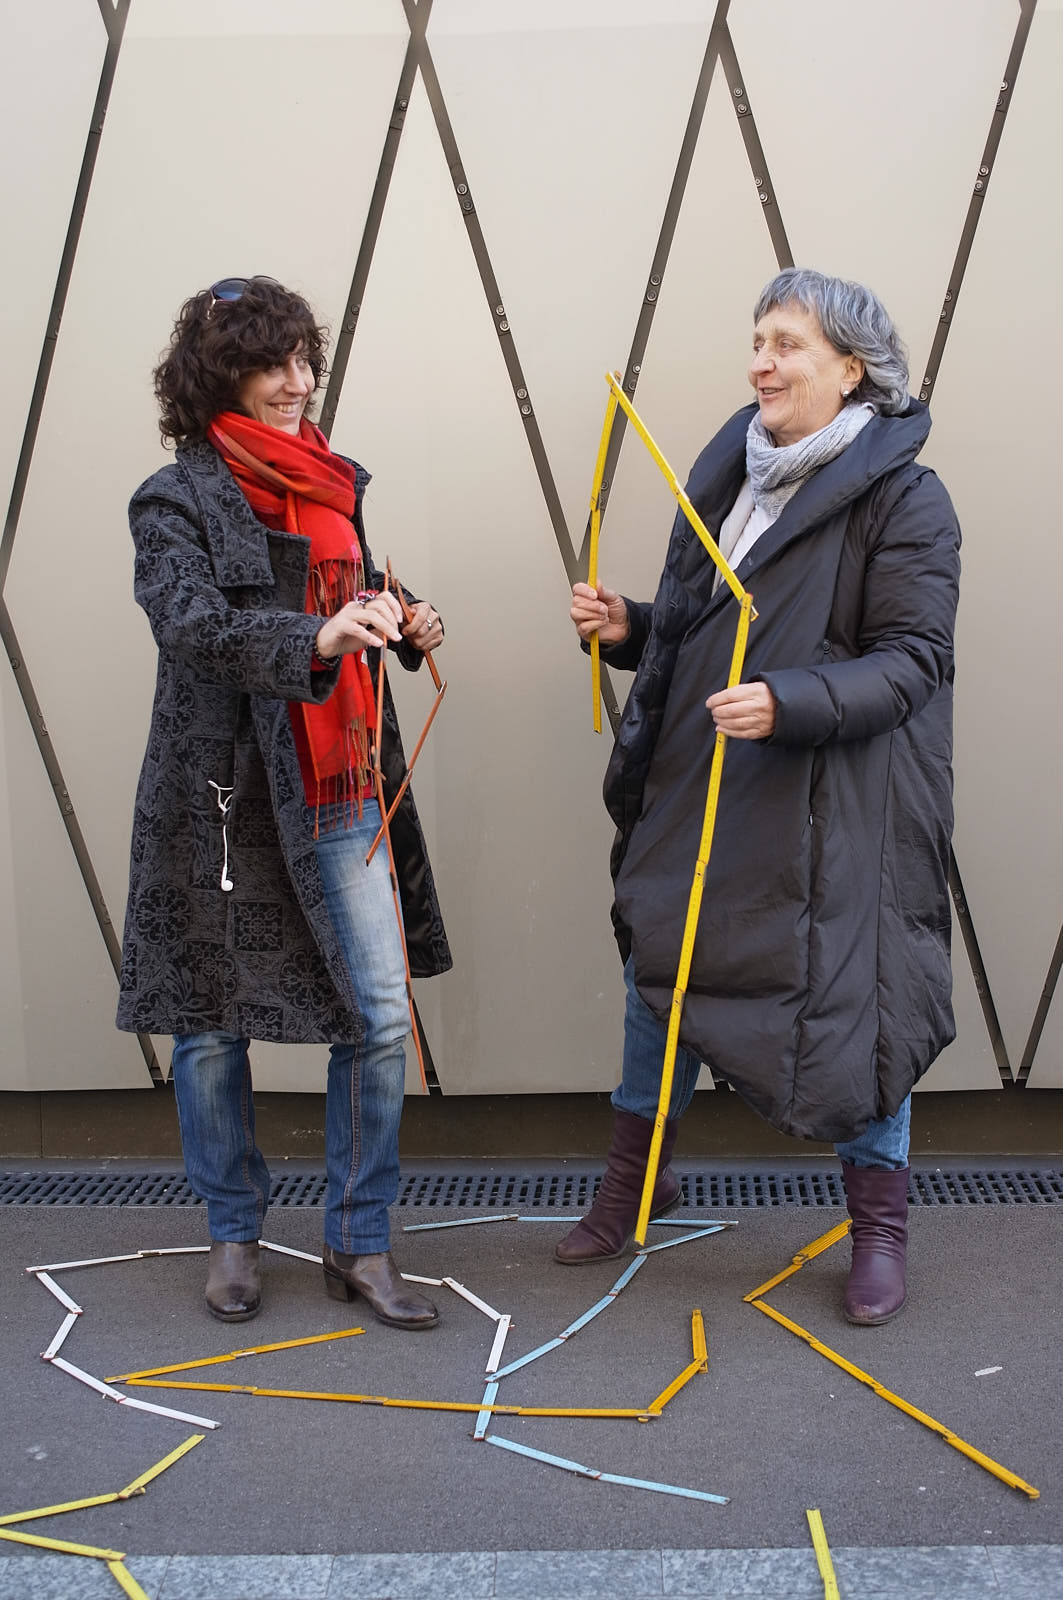 Equipe à l’initiative du projet pilote “Tu m’as vu?” Catherine Froidevaux (à droite) et Carole-lyne Klay